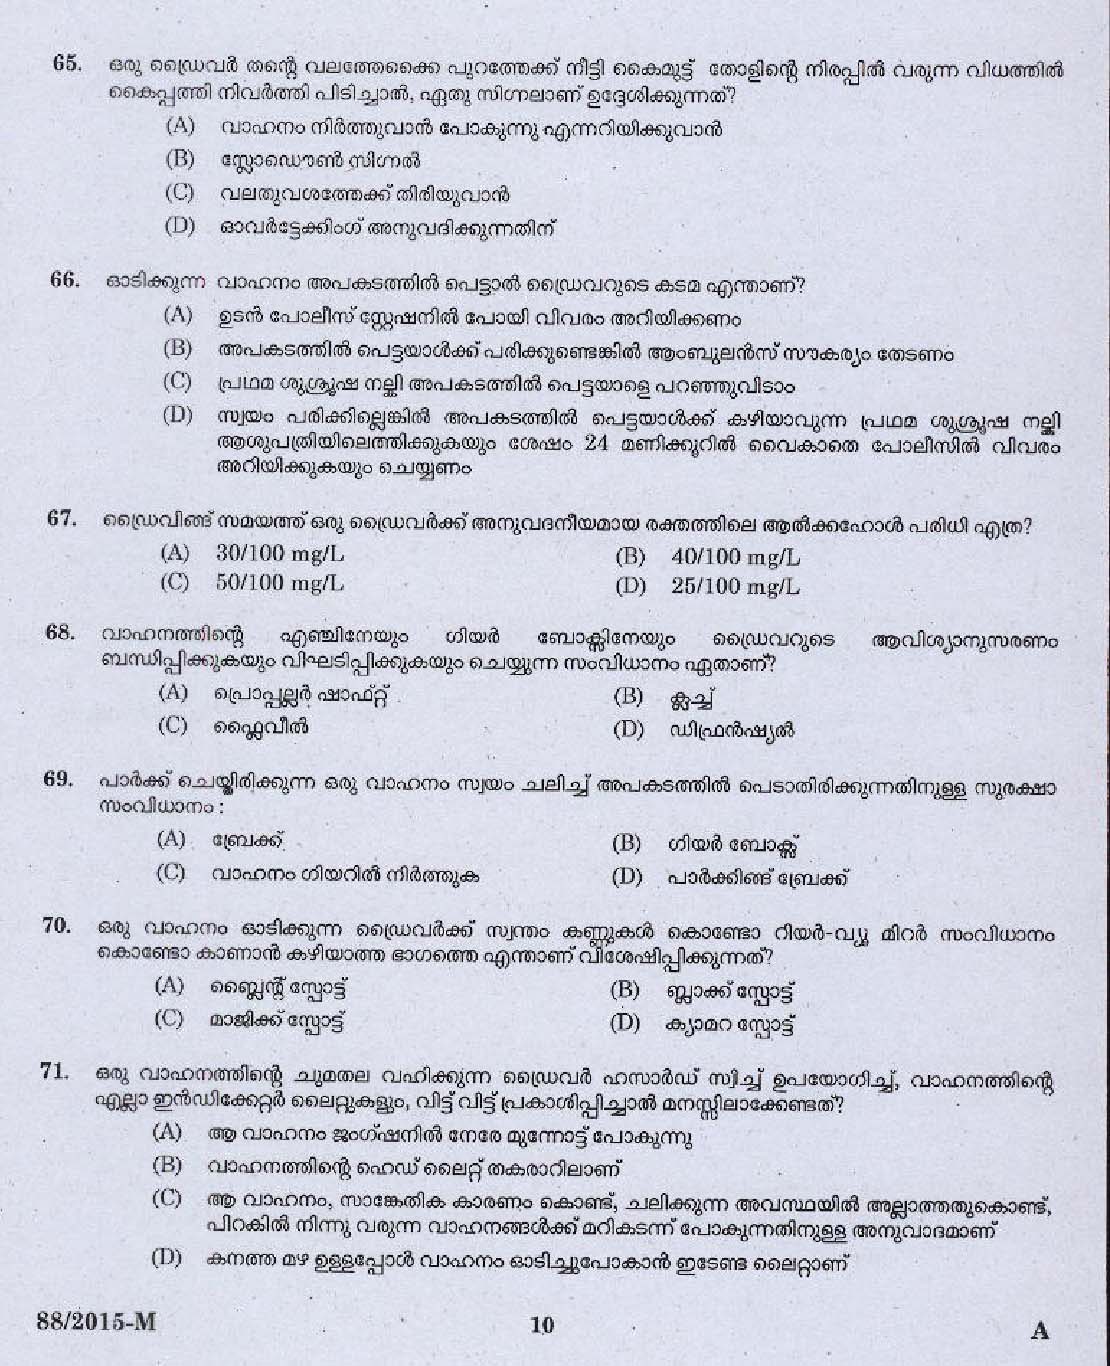 Kerala PSC Driver Grade II Exam 2015 Question Paper Code 882015 M 8